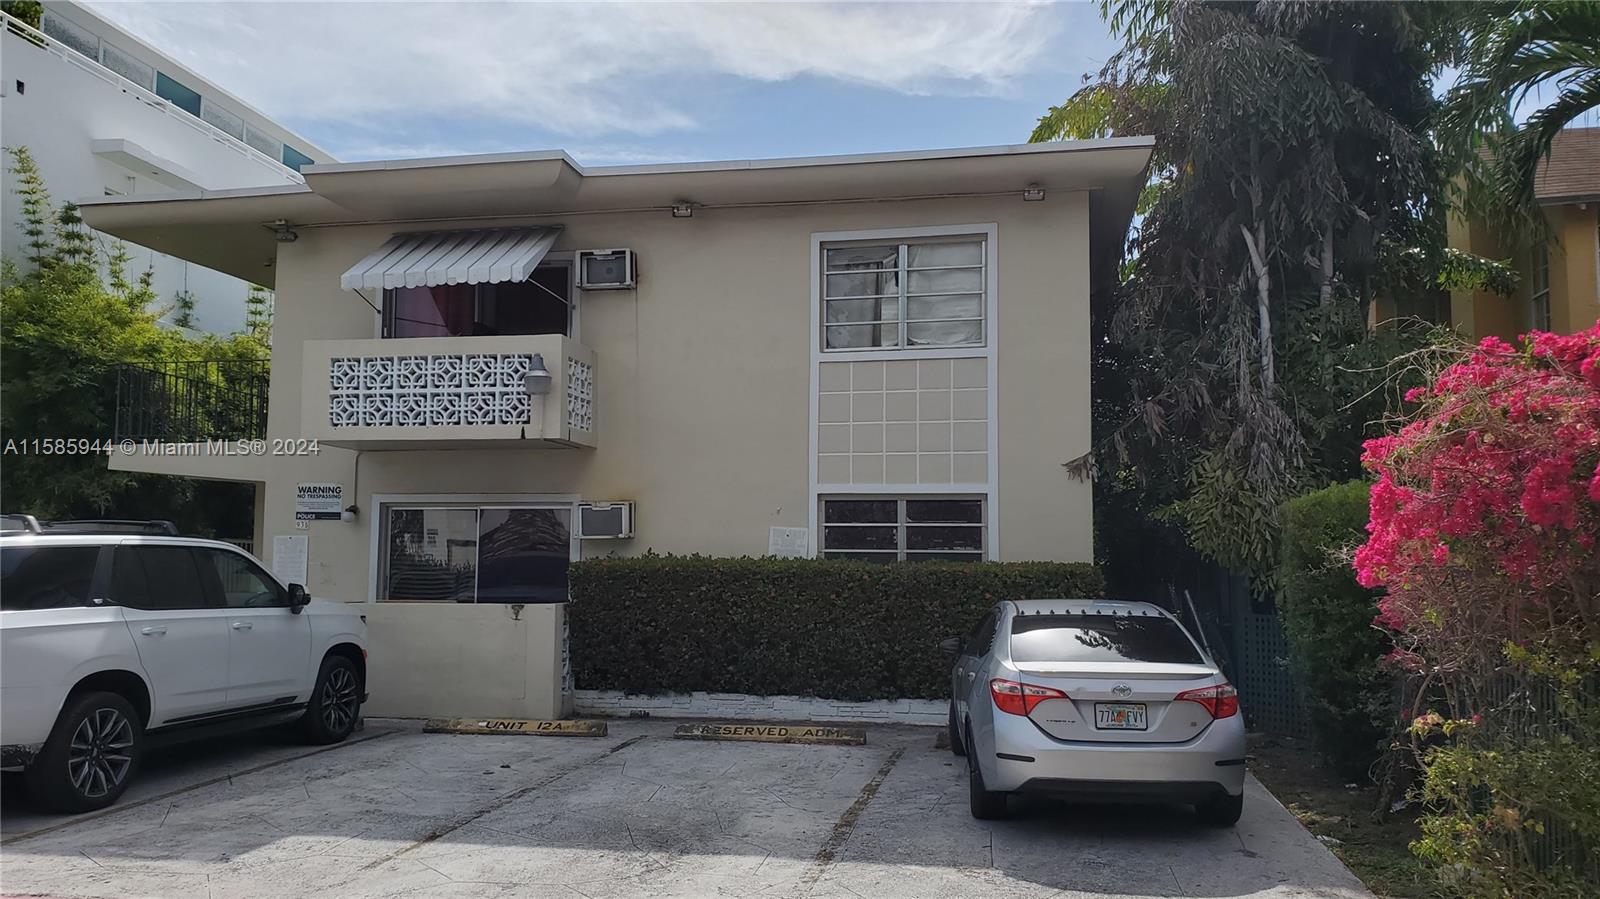 Rental Property at 935 Jefferson Ave, Miami Beach, Miami-Dade County, Florida -  - $3,100,000 MO.